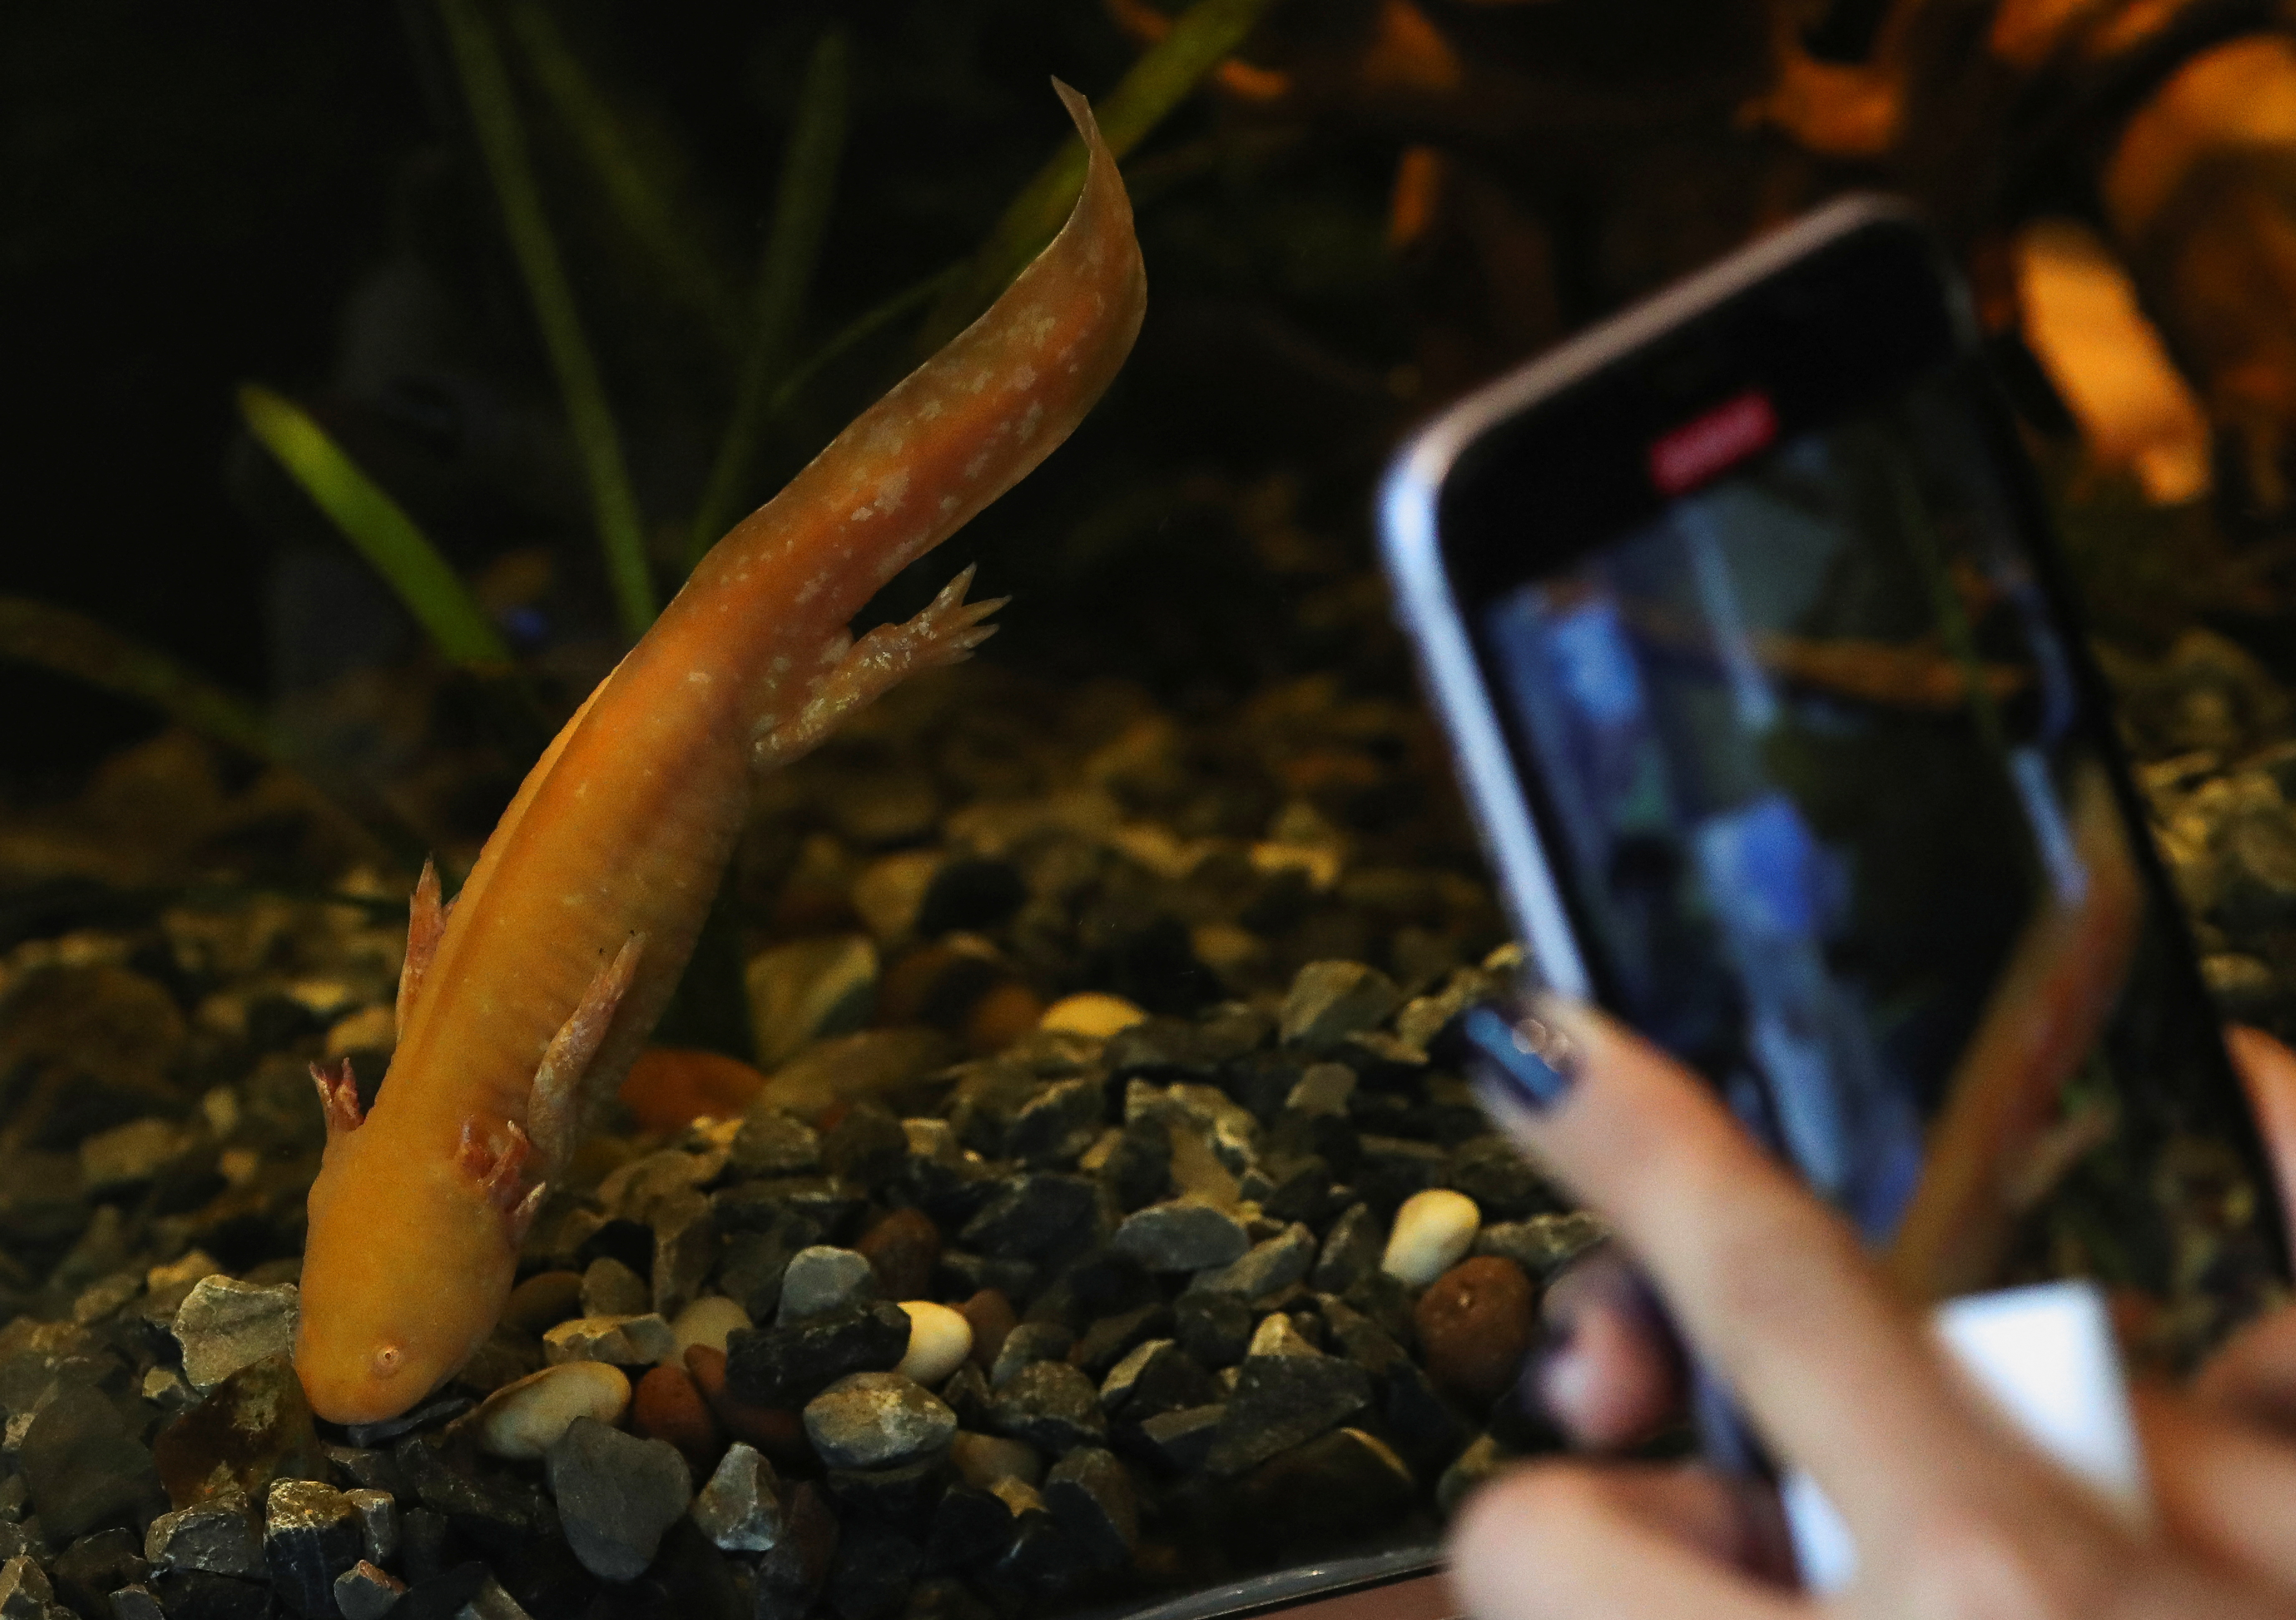 Mexico City opens axolotl museum at Chapultepec Zoo